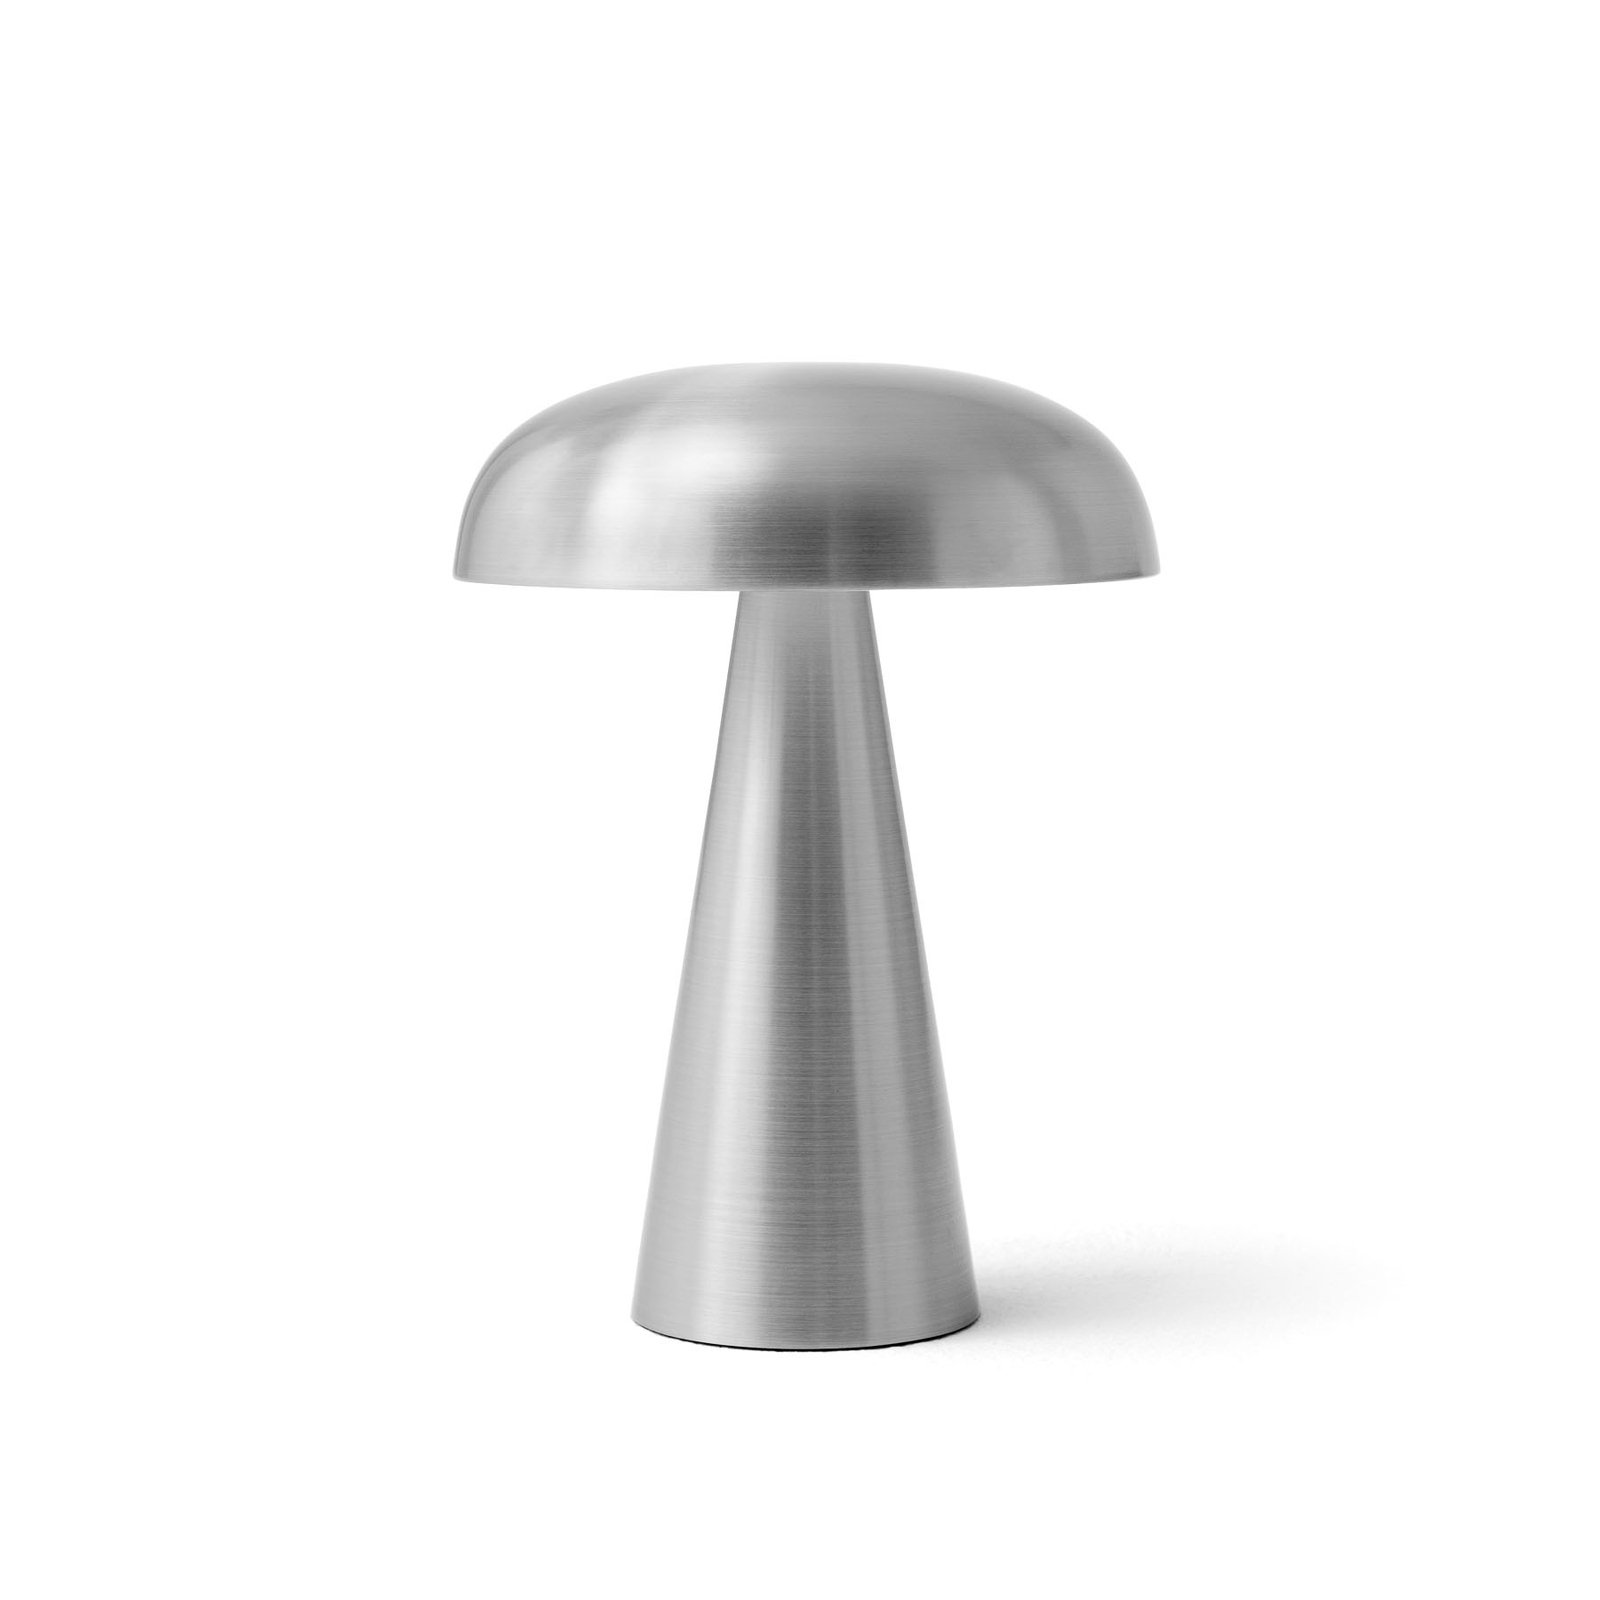 &Tradycyjna akumulatorowa lampa stołowa Como SC53, w kolorze aluminium